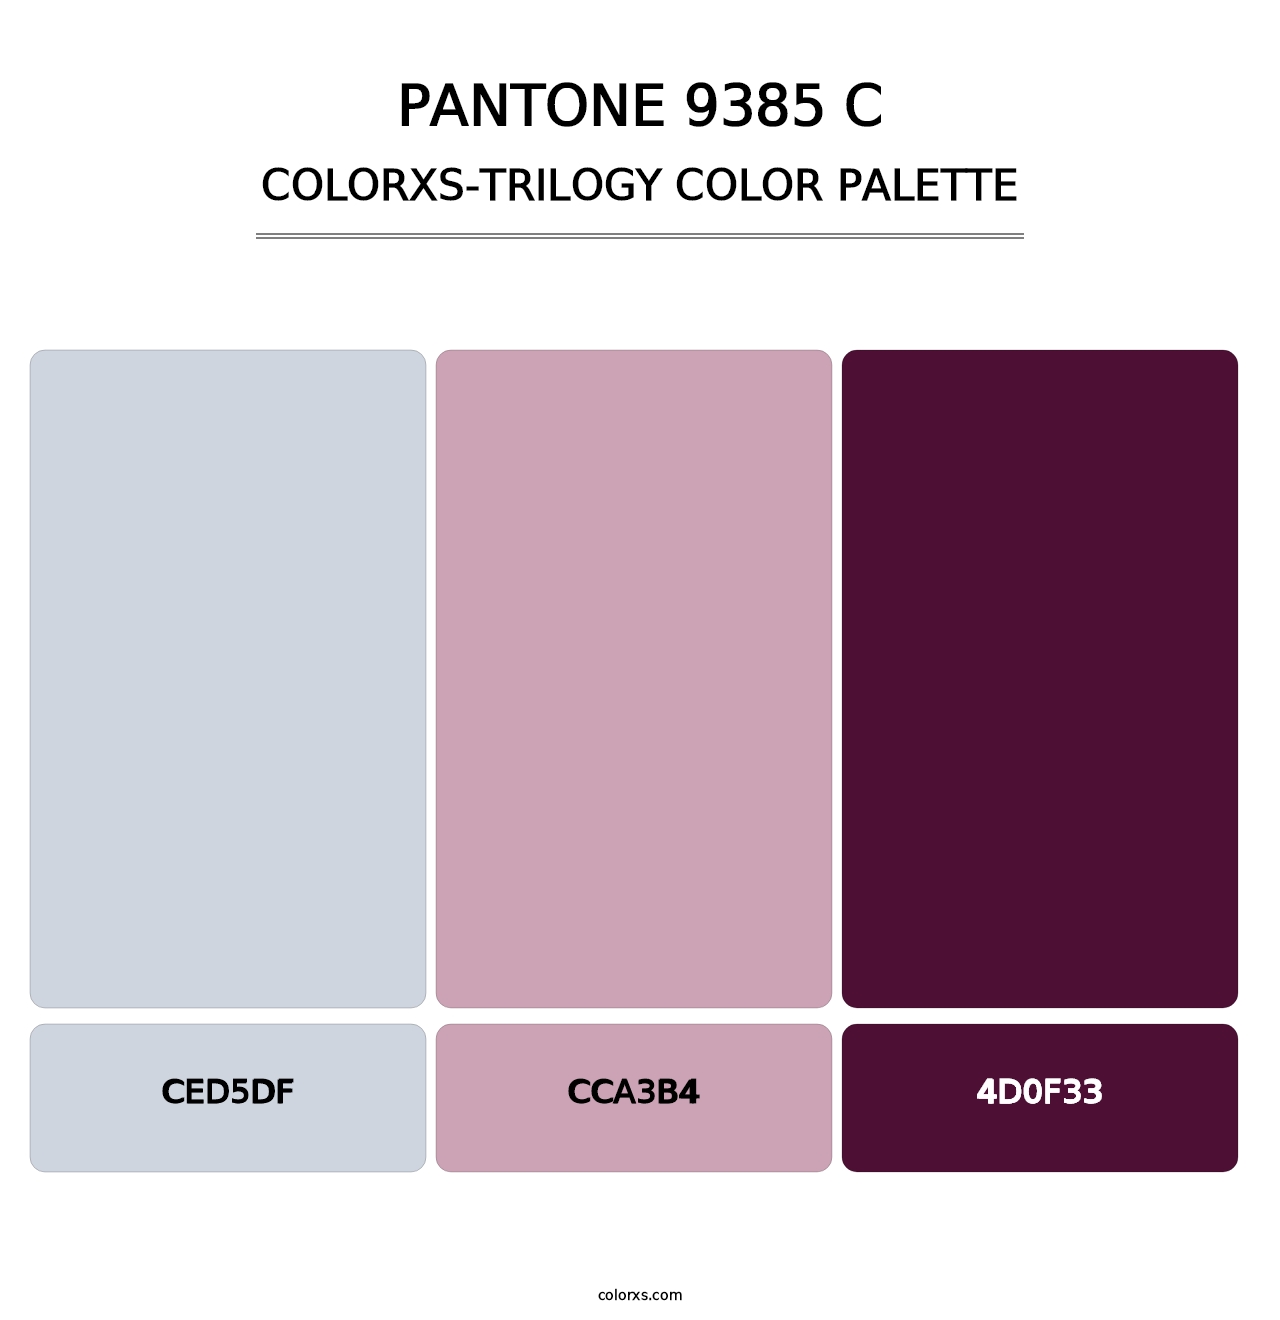 PANTONE 9385 C - Colorxs Trilogy Palette